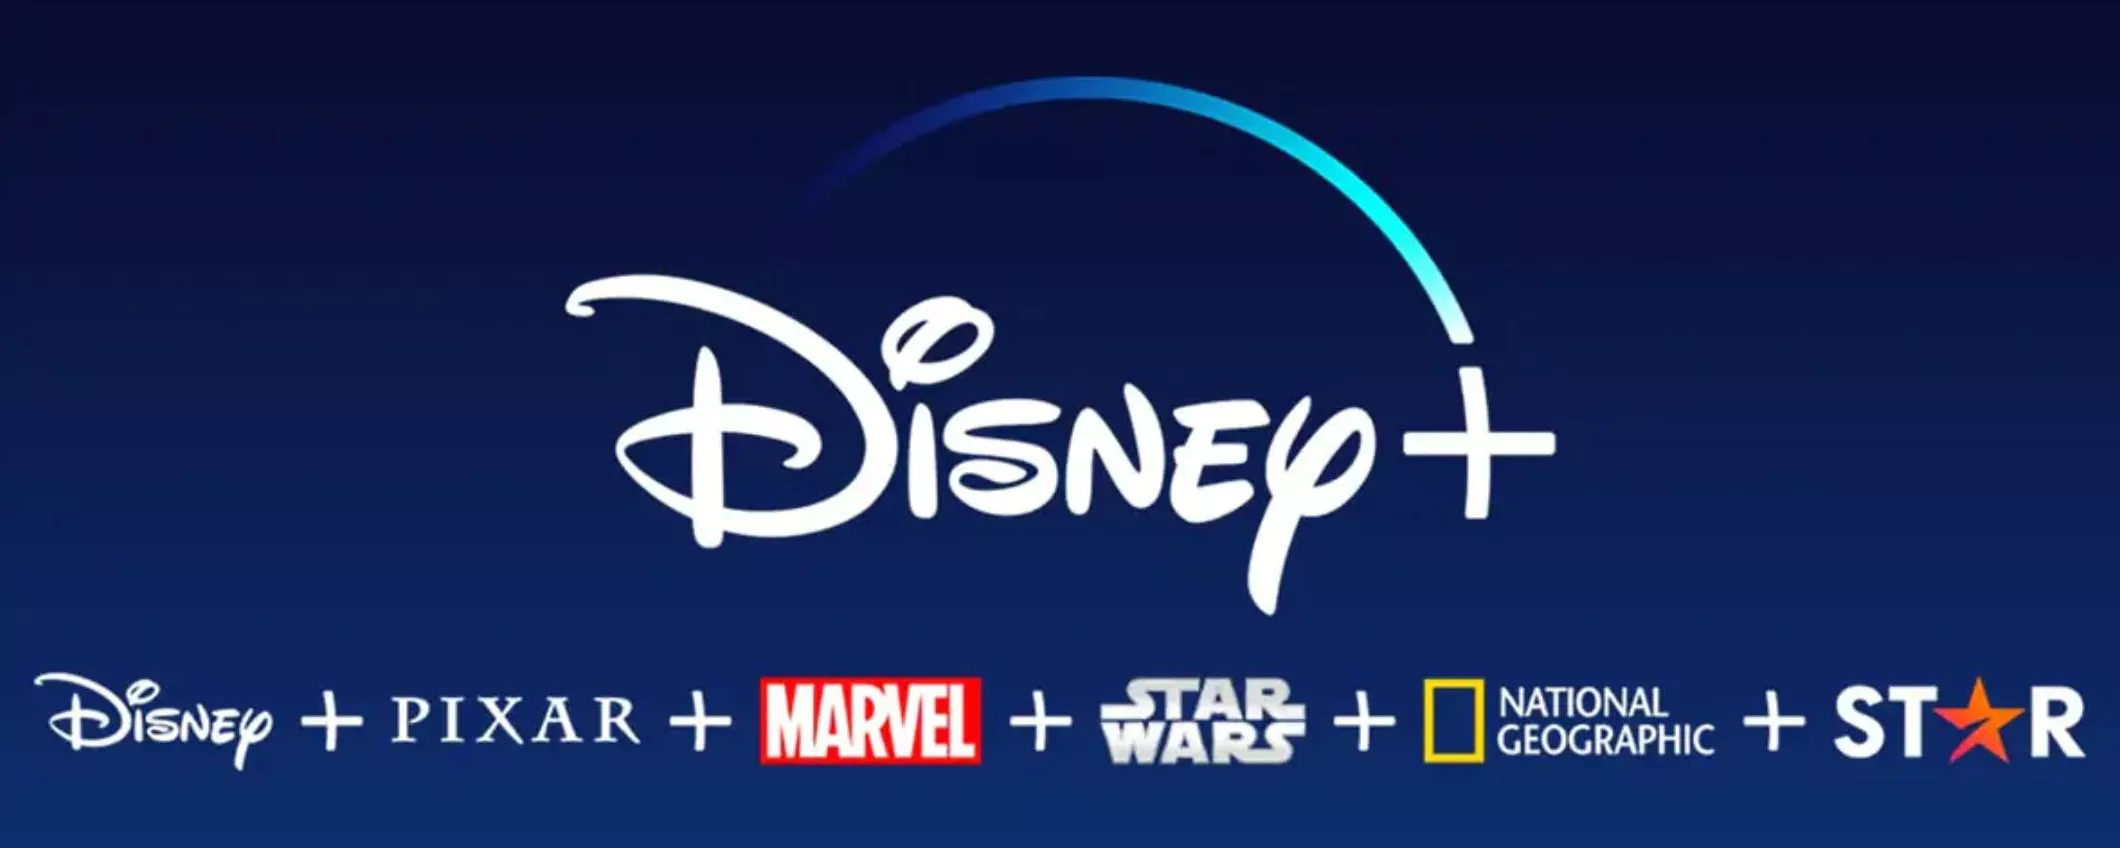 Disney+: arriva il piano con pubblicità, ecco cosa cambia